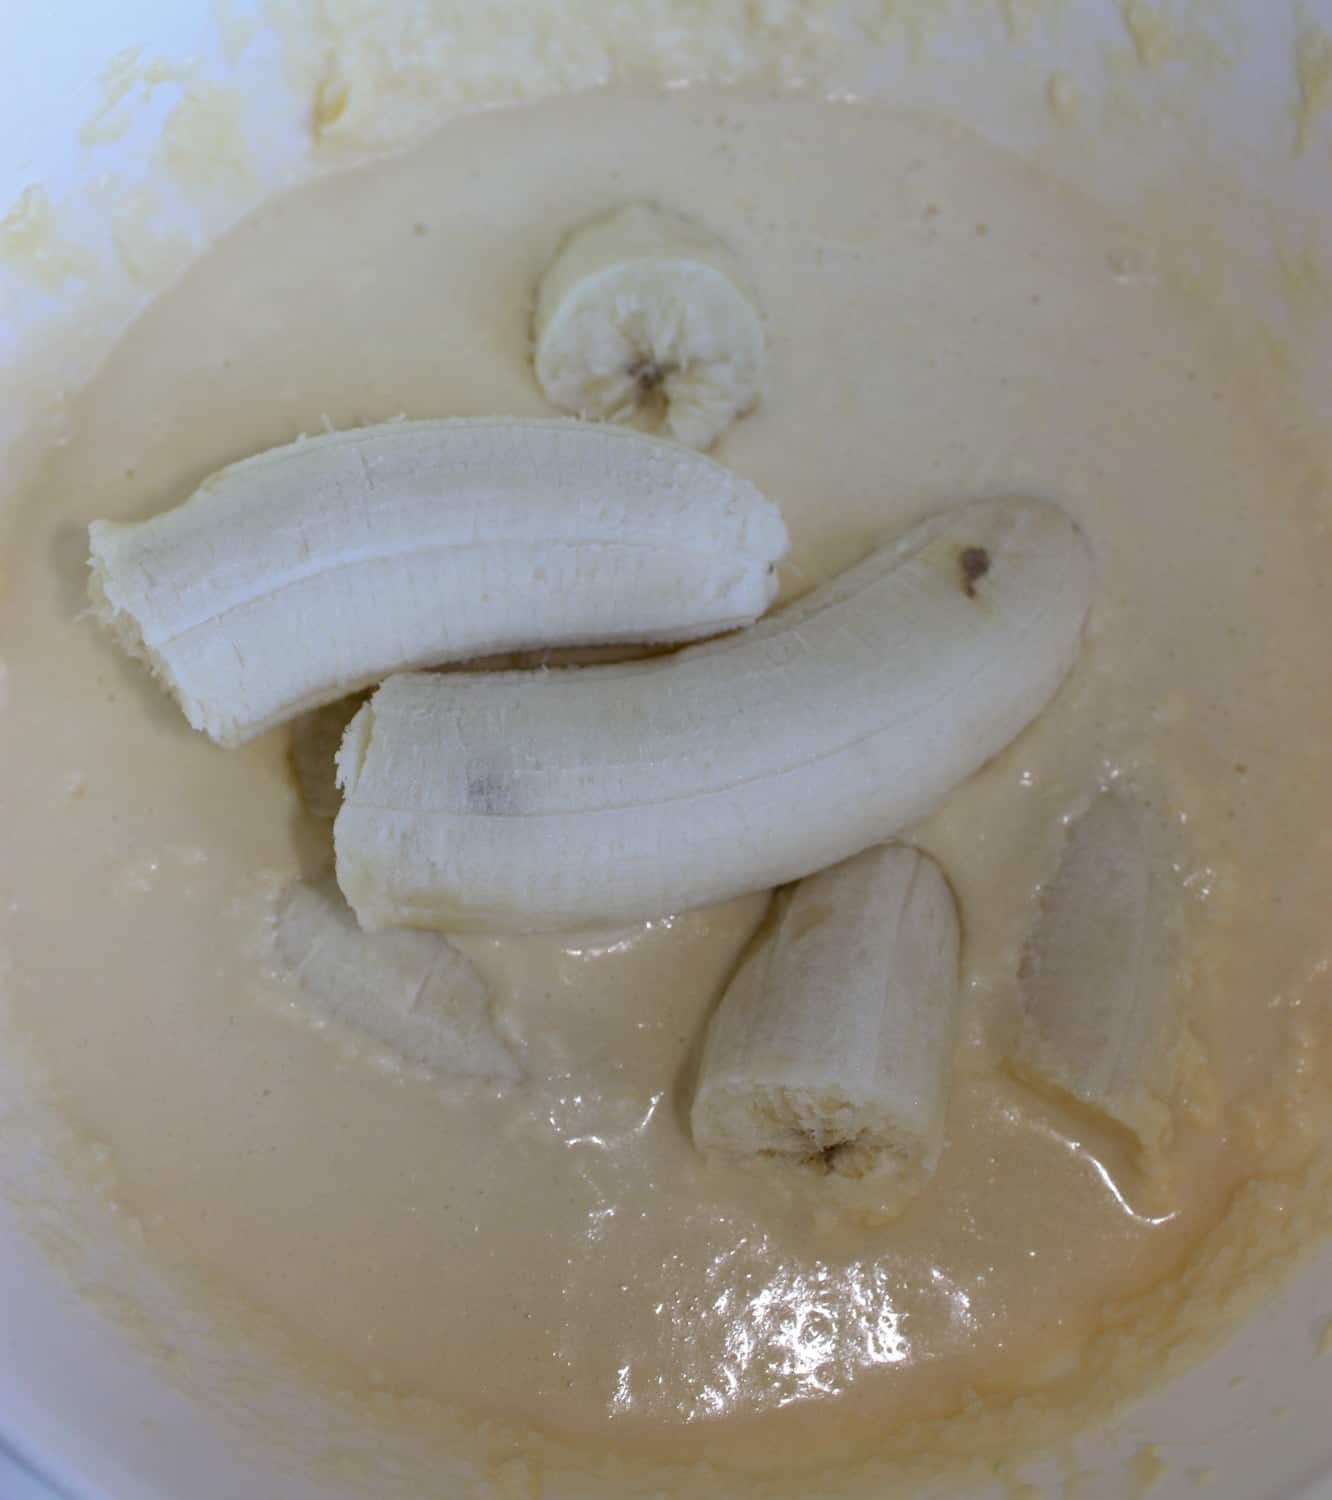 Adding the bananas.